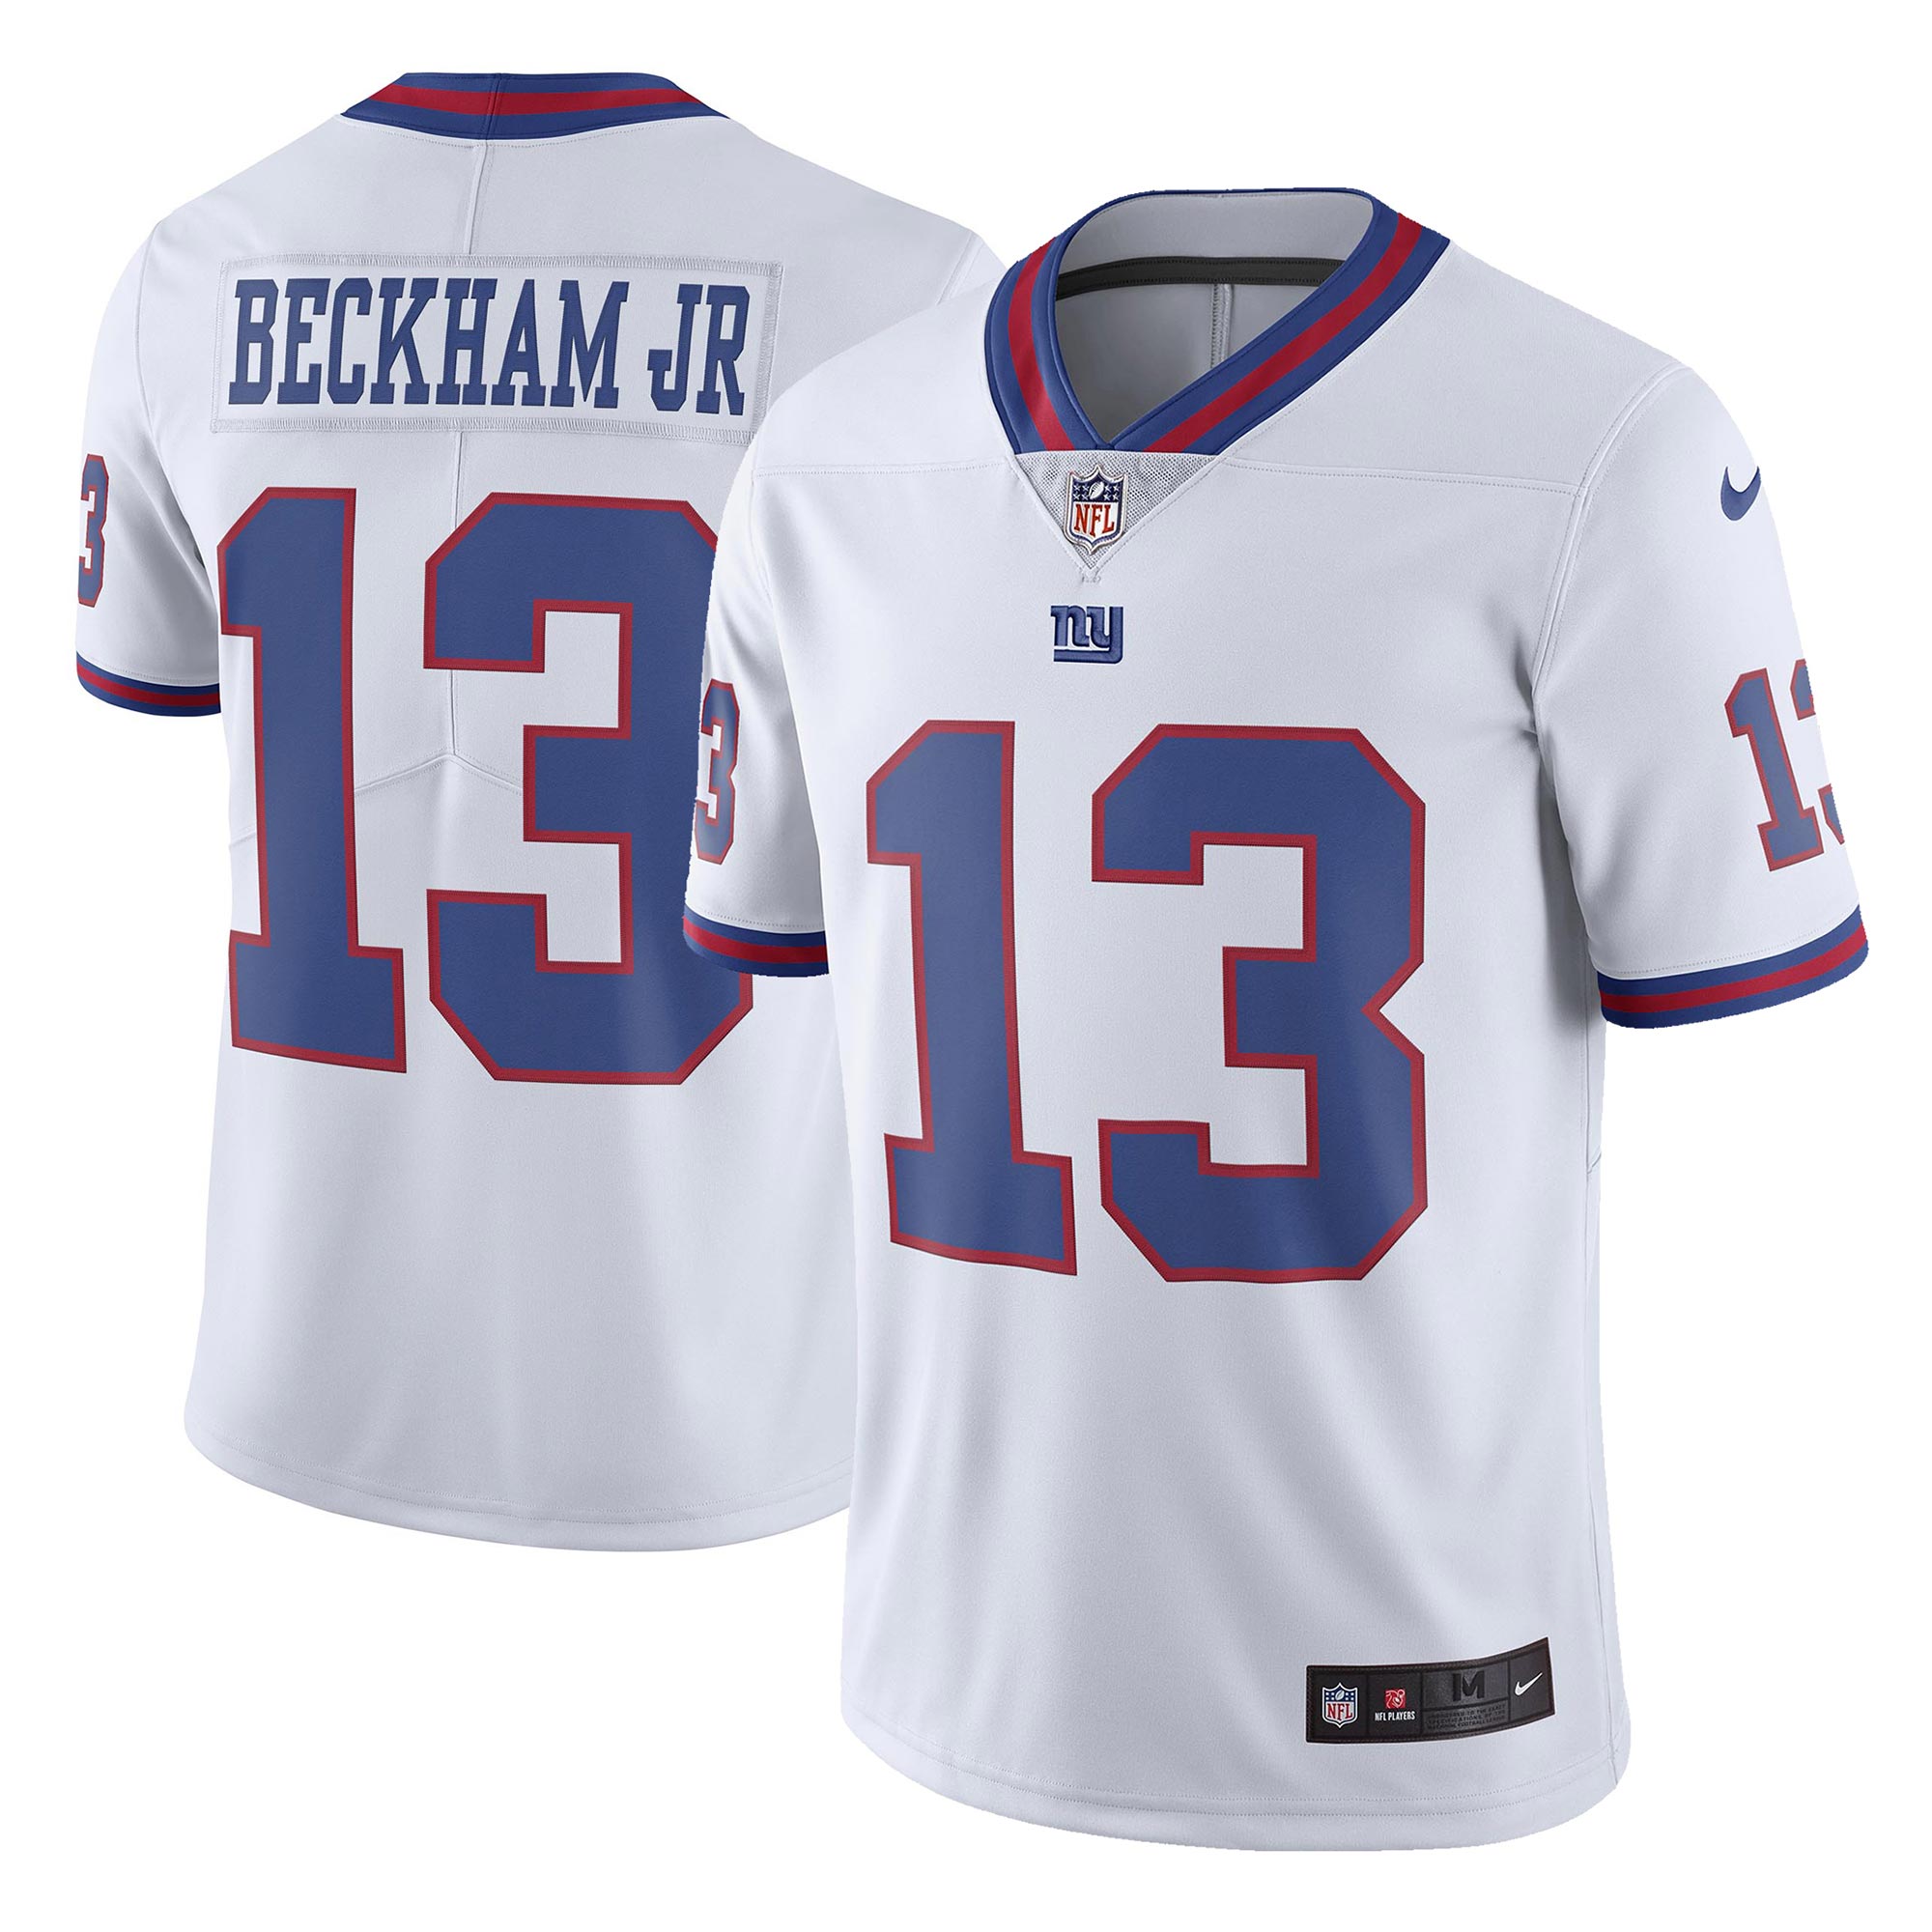 beckham jr giants jersey